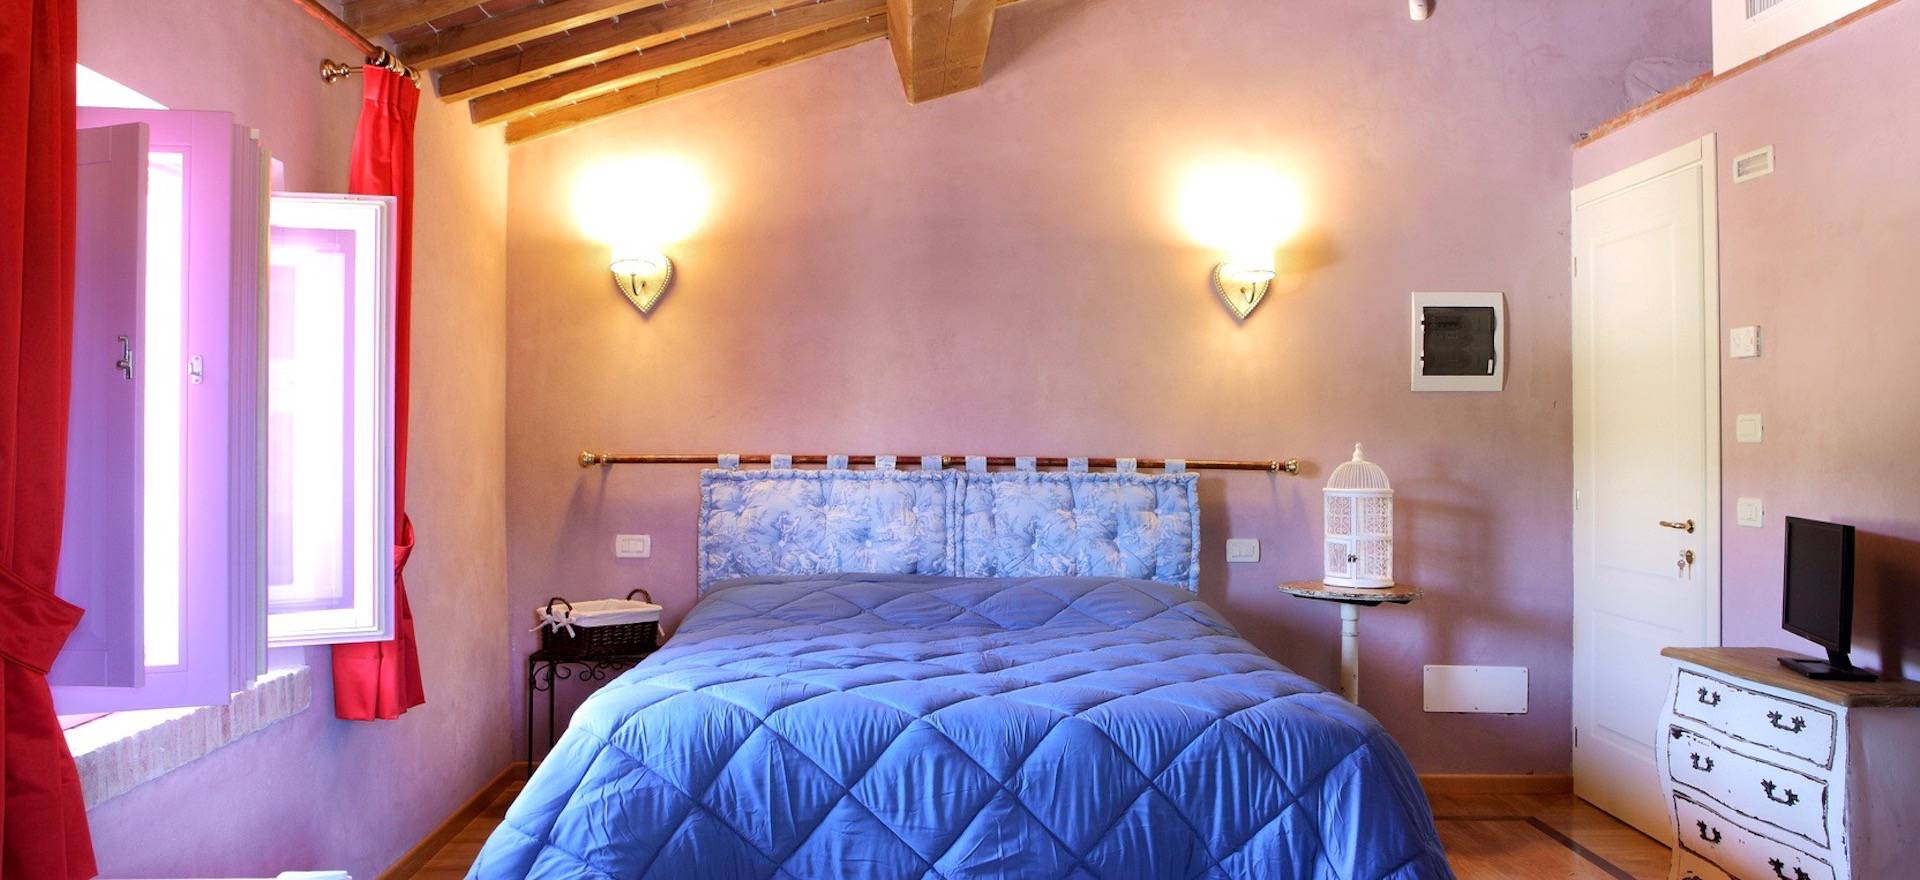 Agriturismo Toscane Agriturismo in Toscane met bijzonder stijlvolle kamers